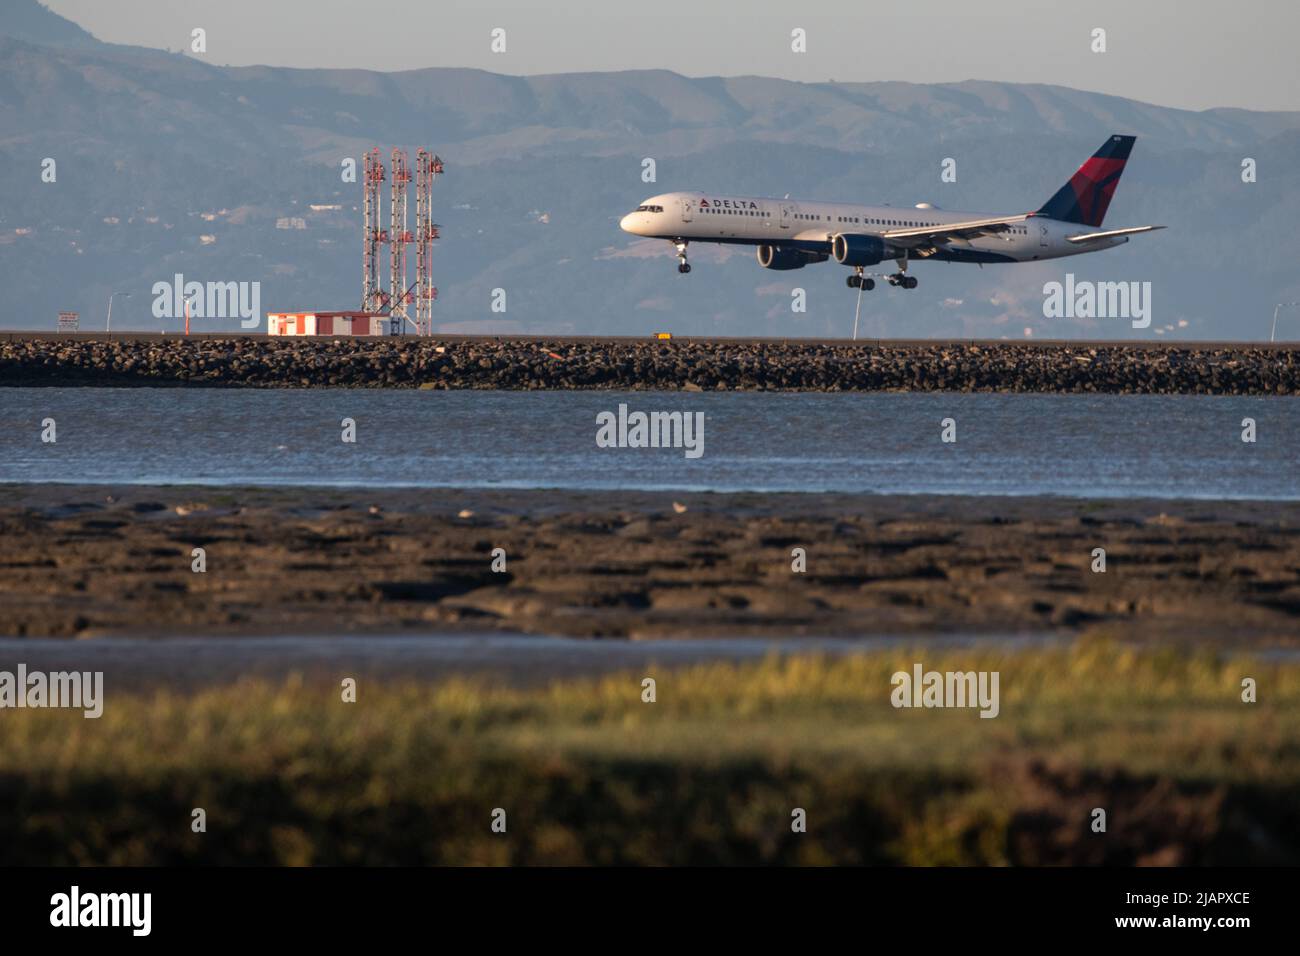 Un avion de la compagnie aérienne Delta arrive pour un atterrissage sur la piste de l'aéroport international de San Francisco (SFO) dans la région de Bay en Californie. Banque D'Images